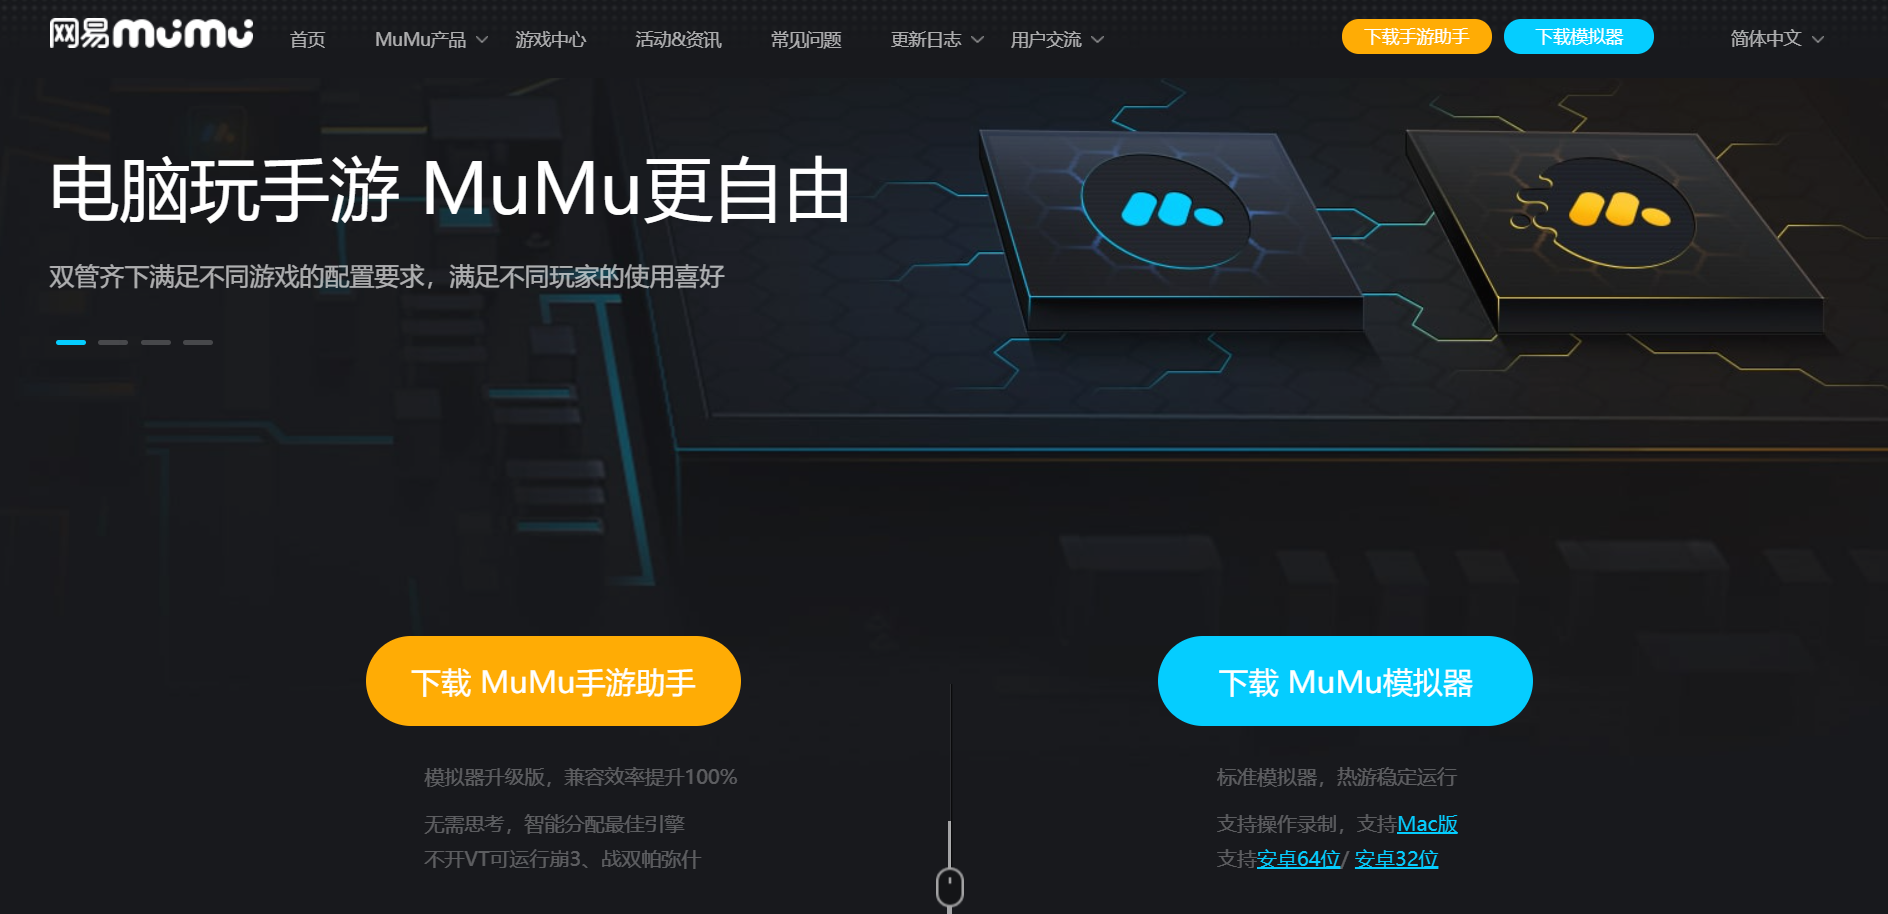 《伊甸园的骄傲》PC电脑版：MuMu模拟器带你大屏体验、键鼠操作、高清高帧感受